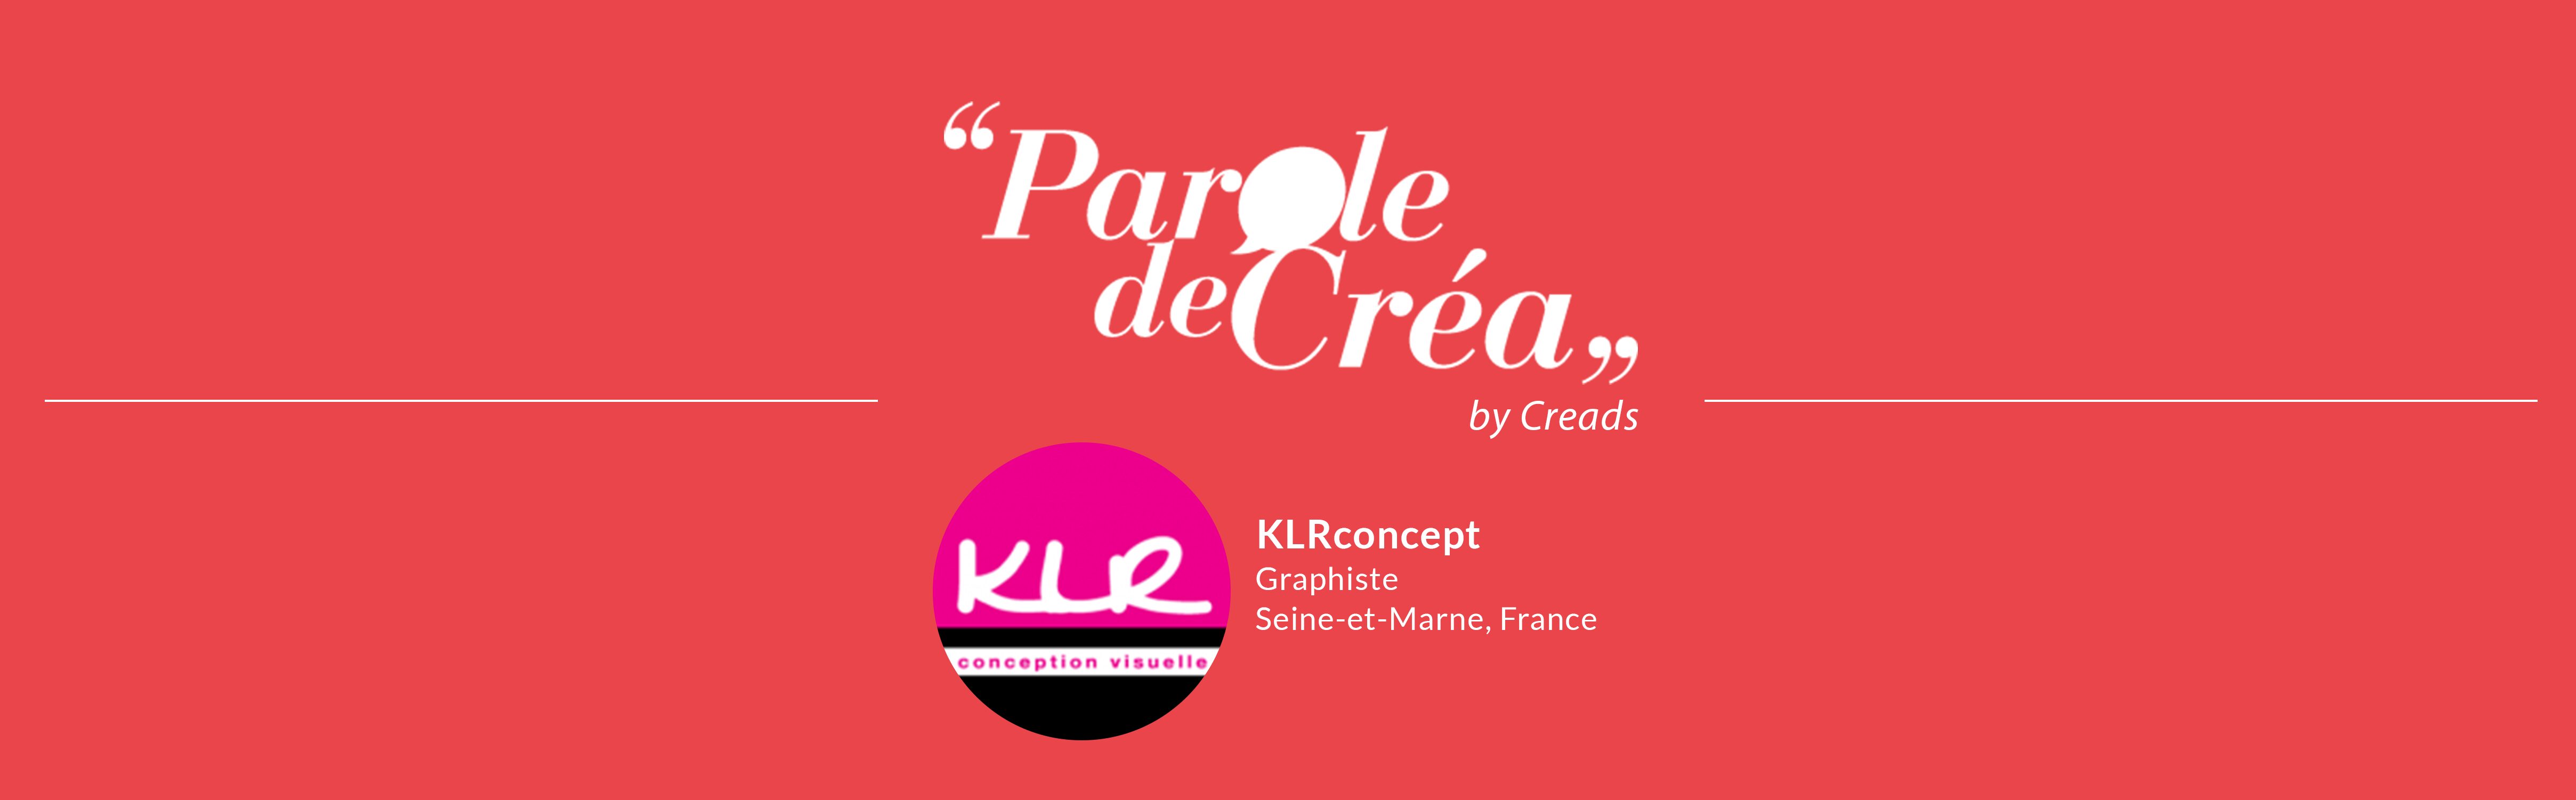 Paroles de Créa – Découvrez l’interview de @KLR Concept !